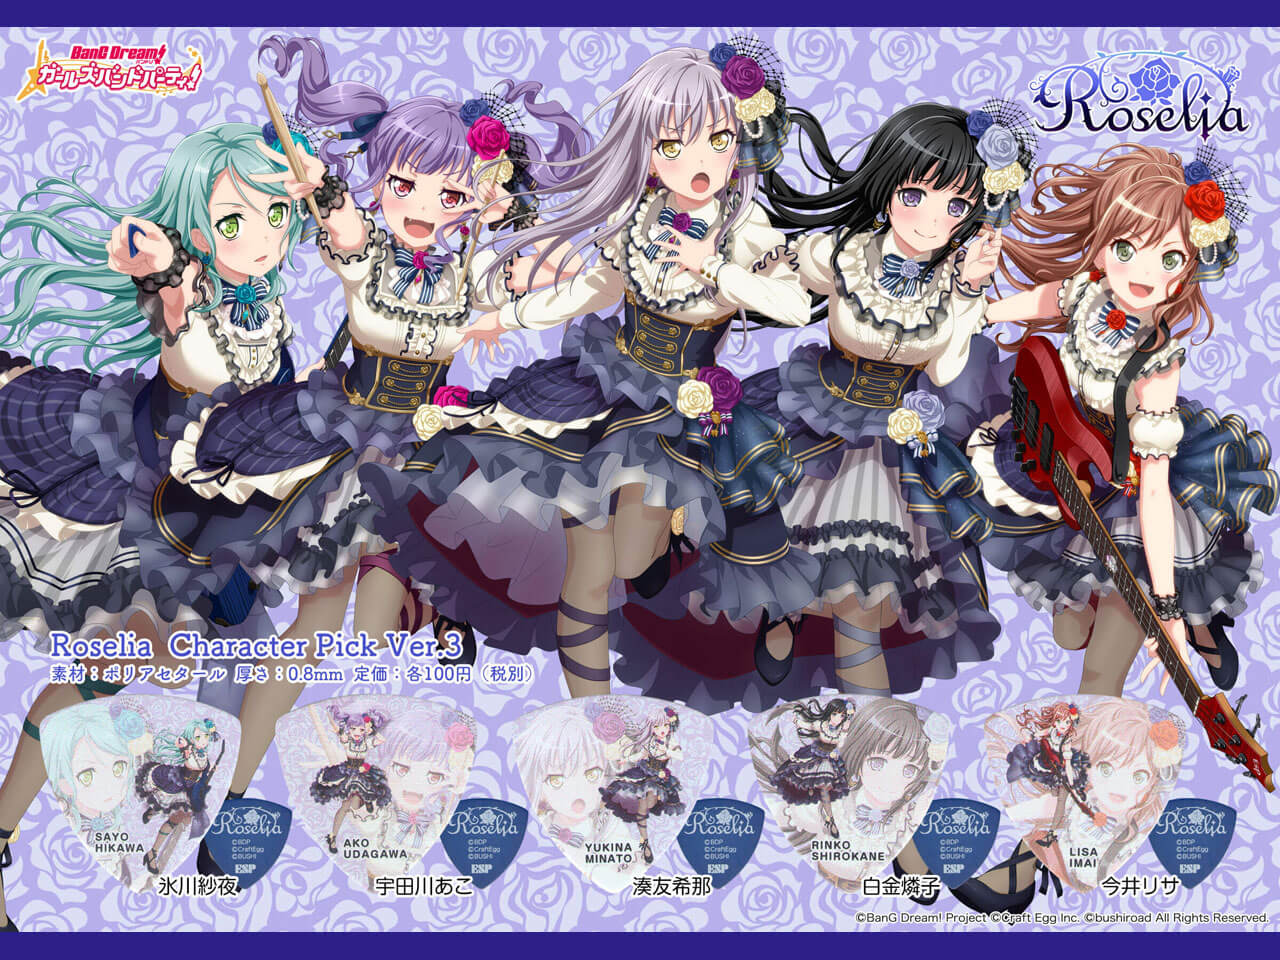 【ESP×BanG Dream!コラボピック】Roselia Character Pick Ver.3 "湊友希那"（GBP Yukina Roselia 3）＆”ハメパチ” セット